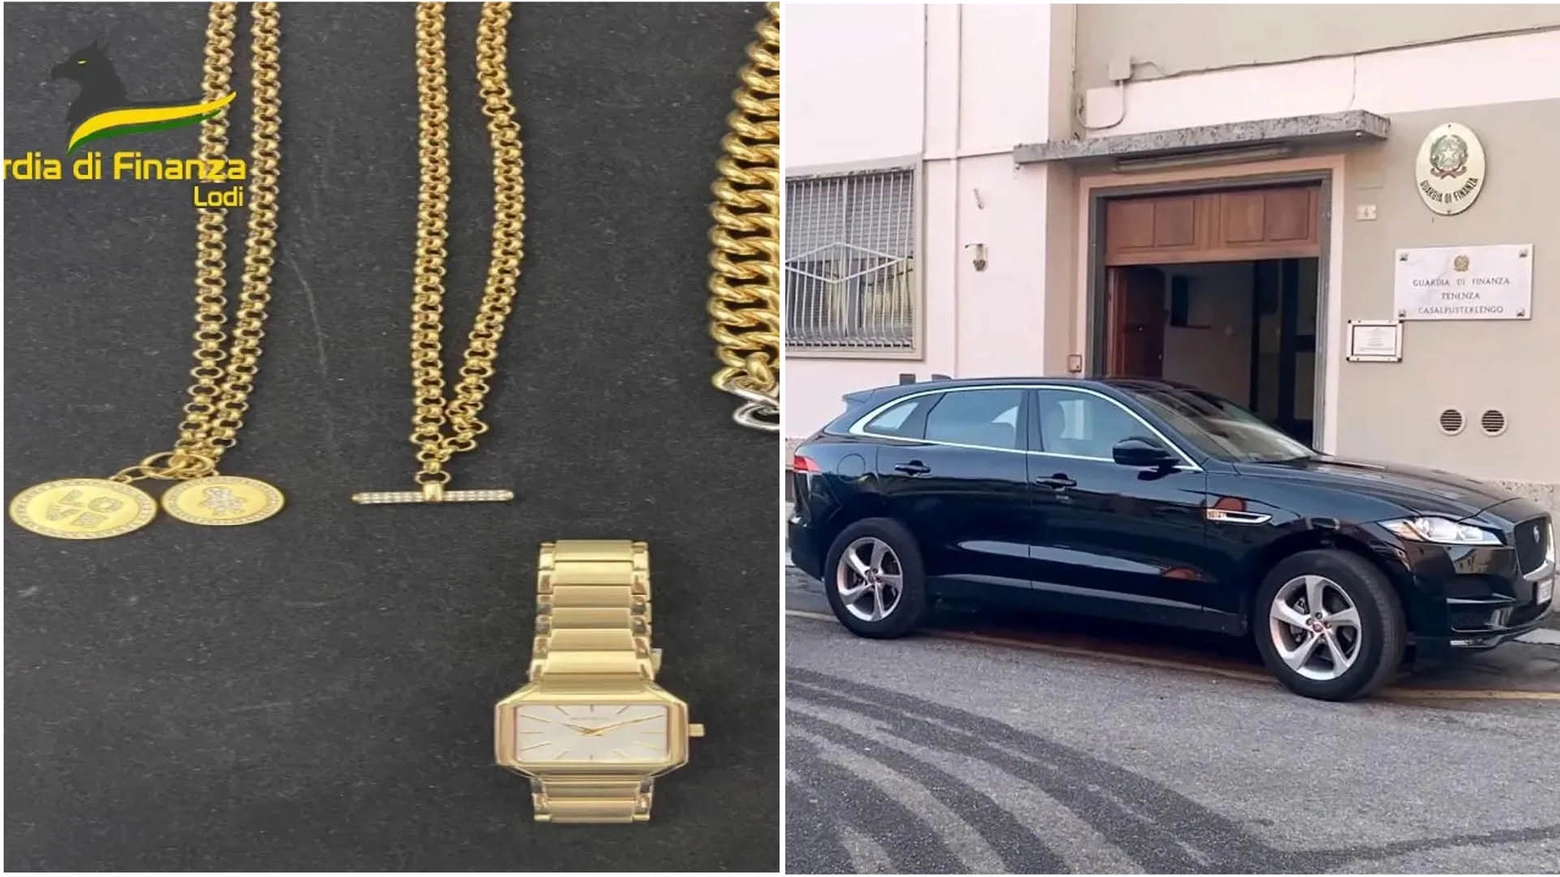 Alcuni beni confiscati al mago Candido: gioielli, orologi e una Jaguar